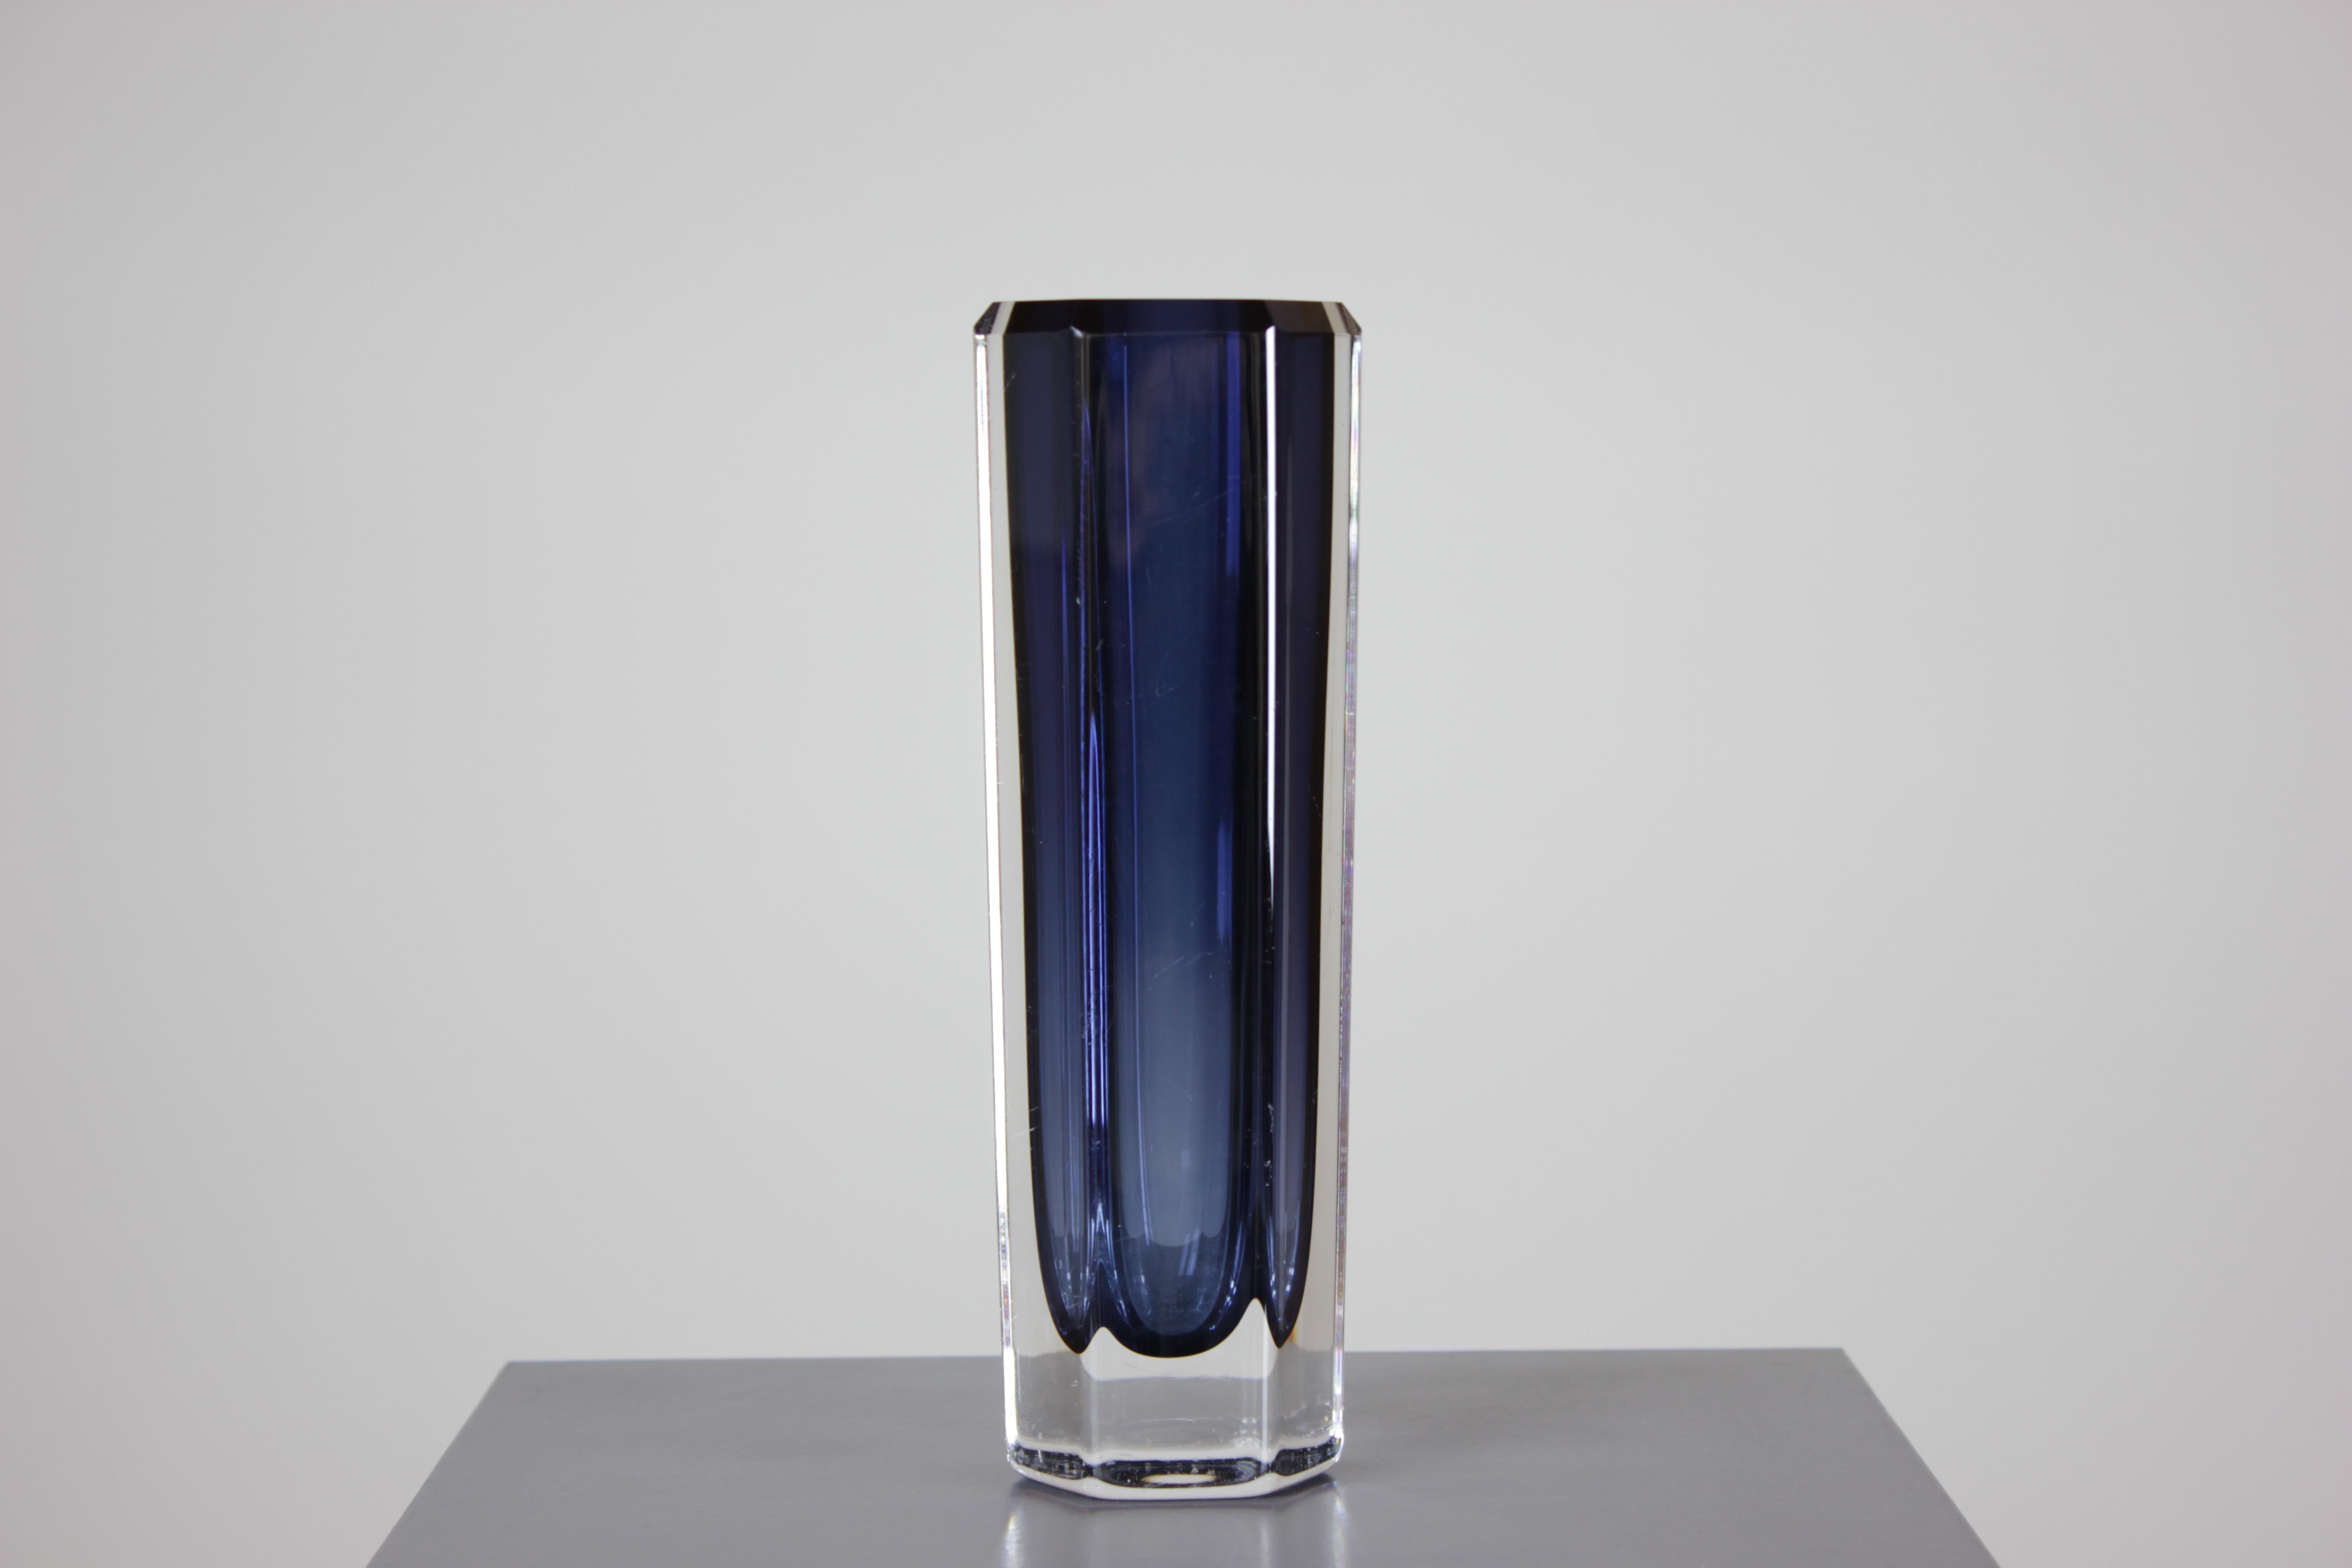 Bringen Sie einen Hauch von künstlerischer Eleganz in Ihr Zuhause mit dieser exquisiten Mid-Century Glass Art Vase, entworfen von Bengt Edenfalk für Skruf Glasbruk. Mit viel Liebe zum Detail gefertigt, strahlt diese authentische Glaskunstvase